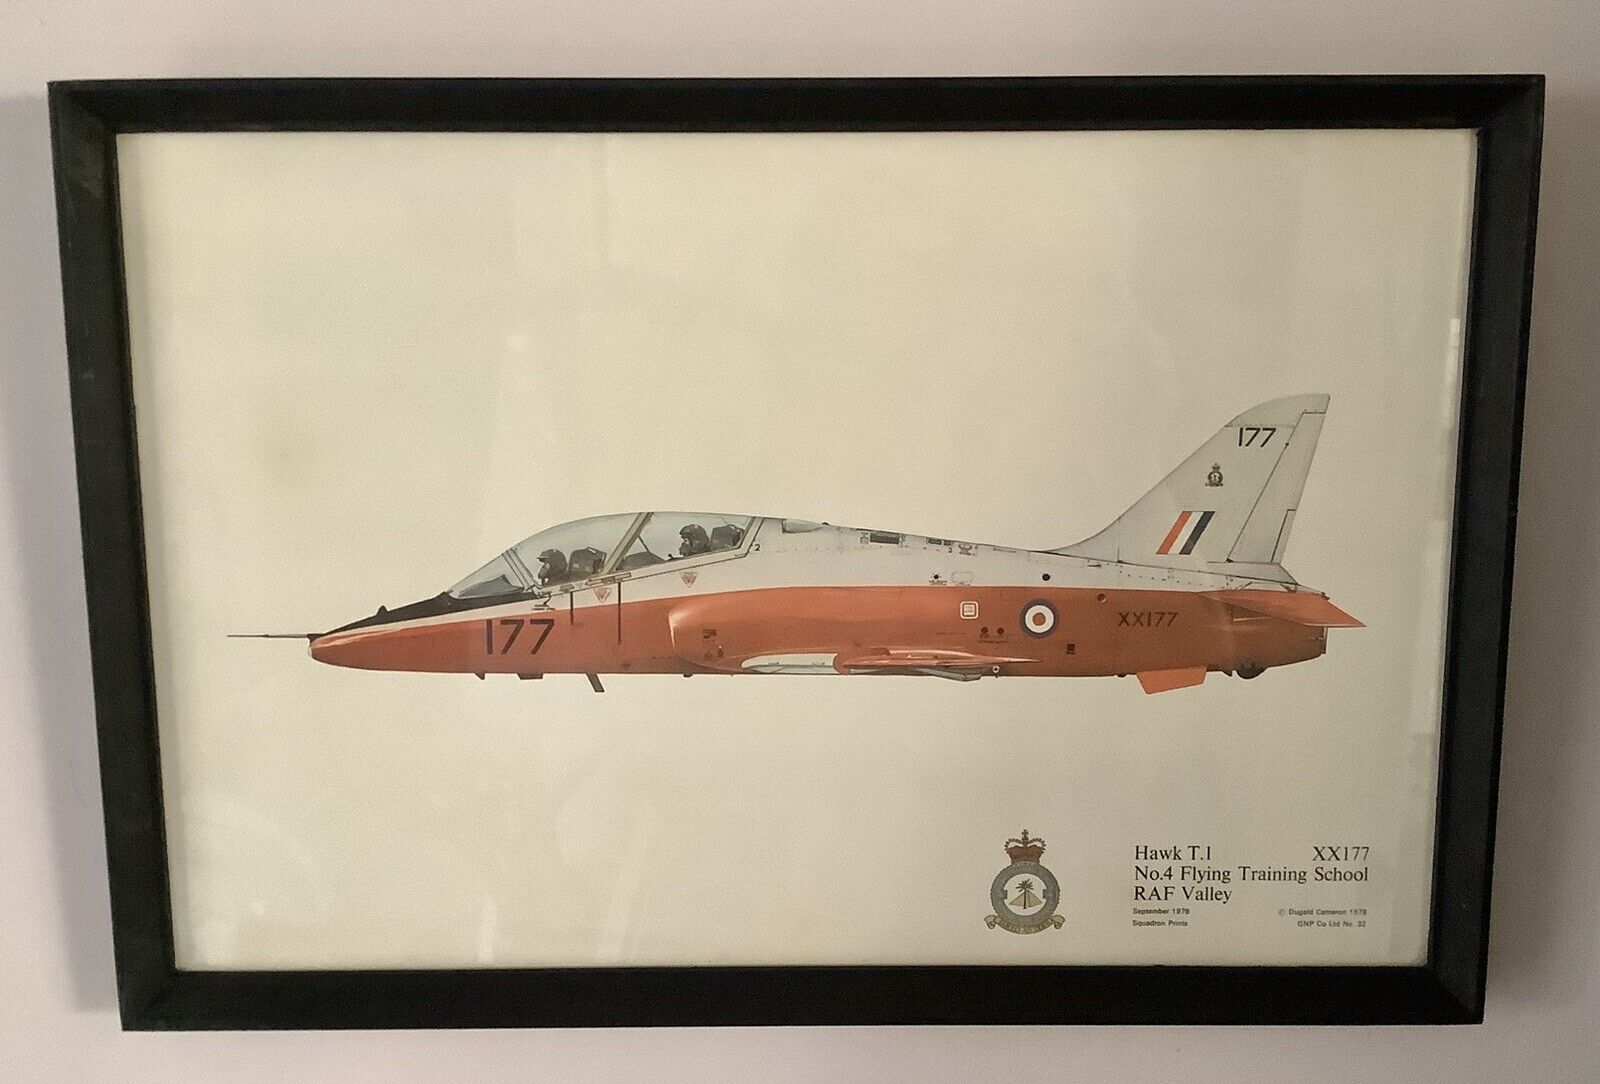 Dugald Cameron Hawk T-1  XX177 RAF Squadron Print 1978 - Vintage Framed